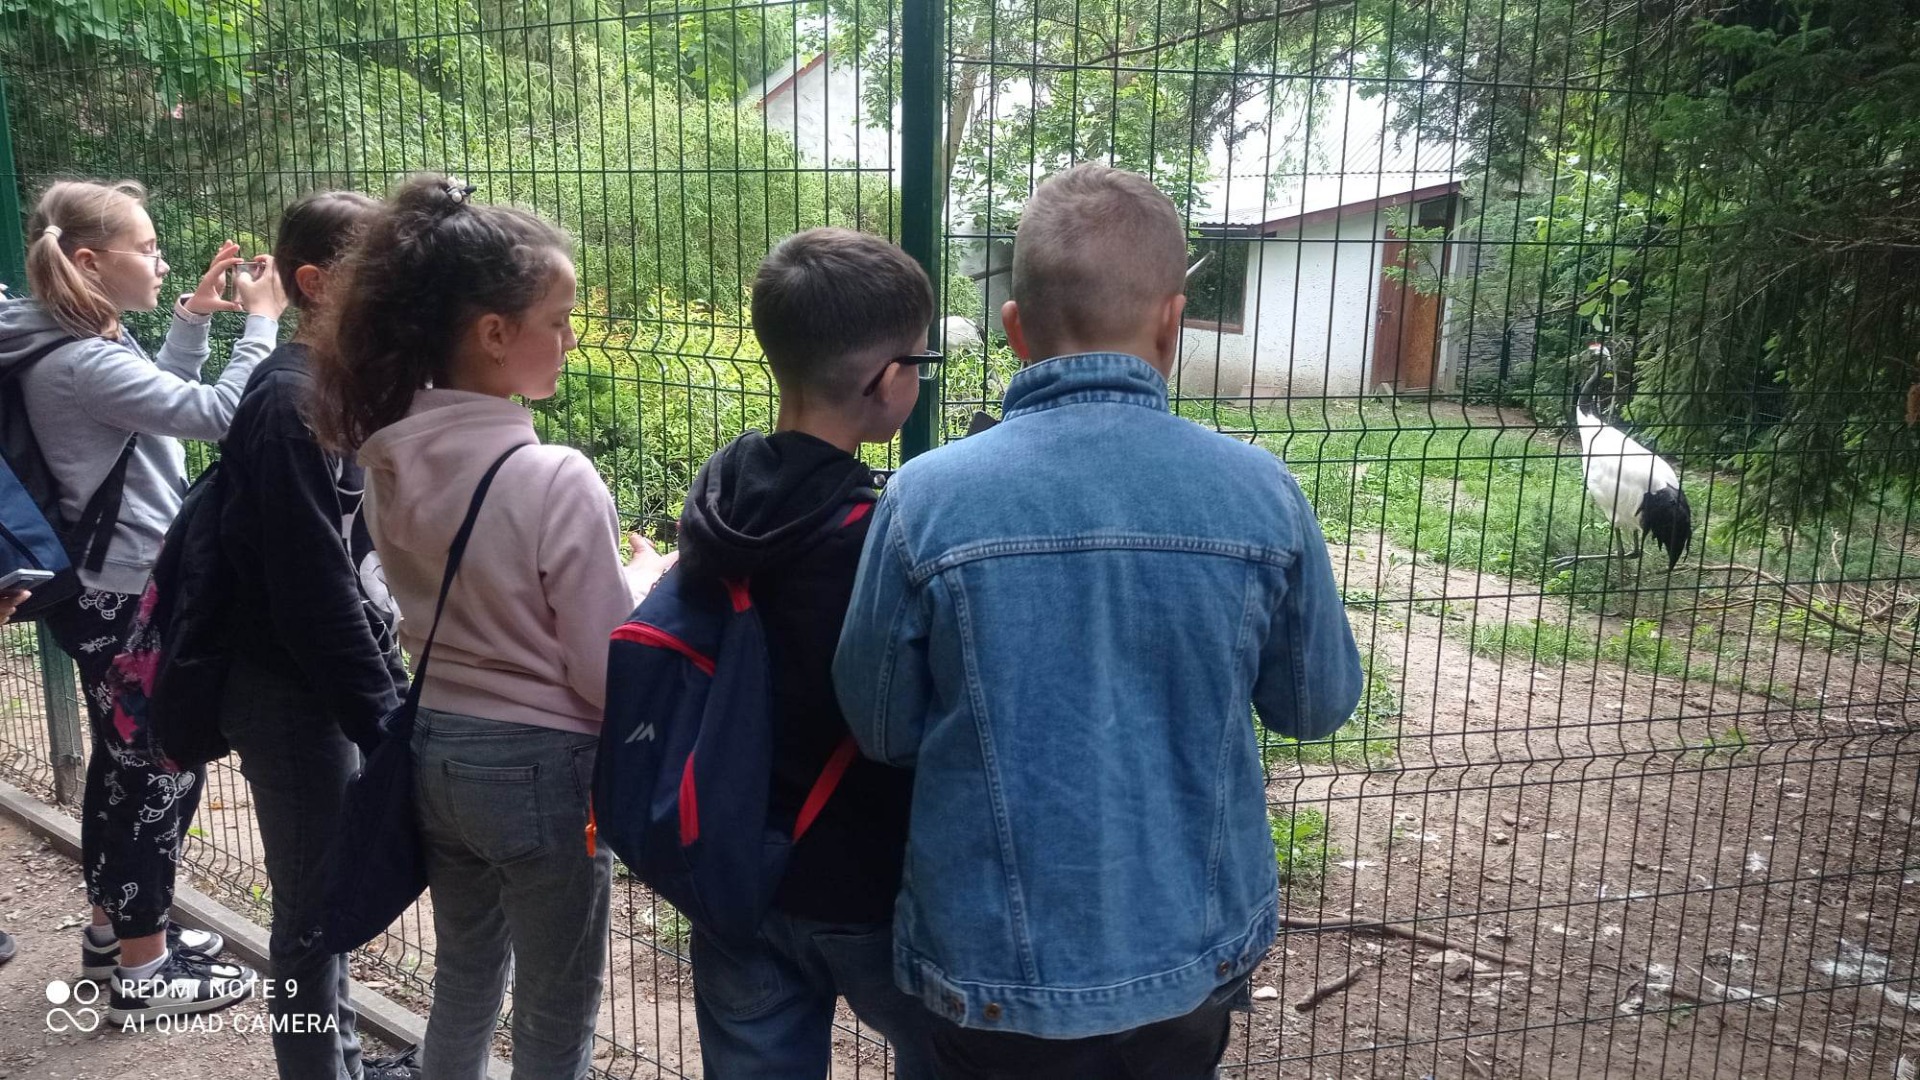 Uczniowie oglądają zwierzęta w mini zoo